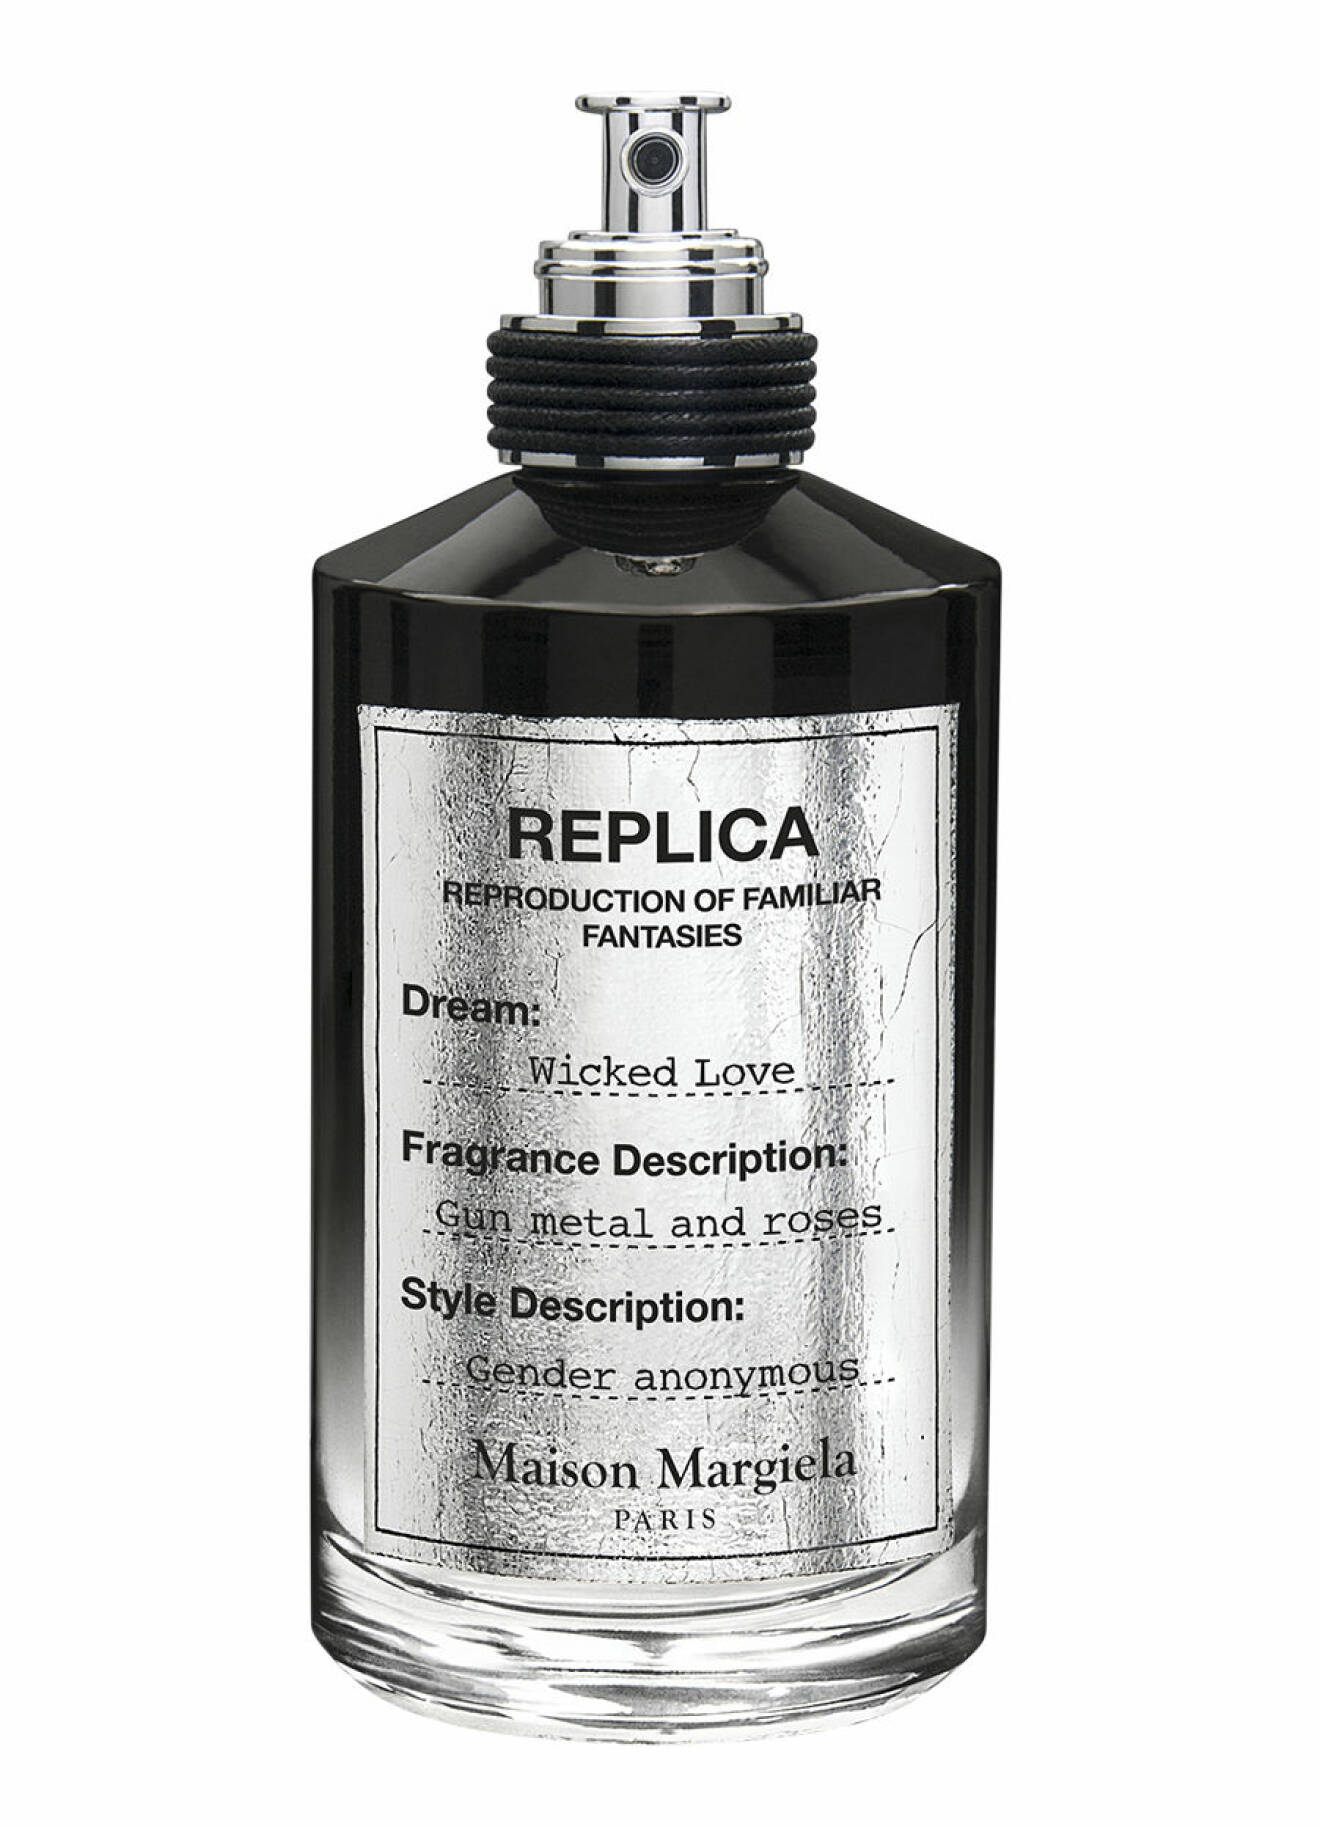 Parfym från Replica. 